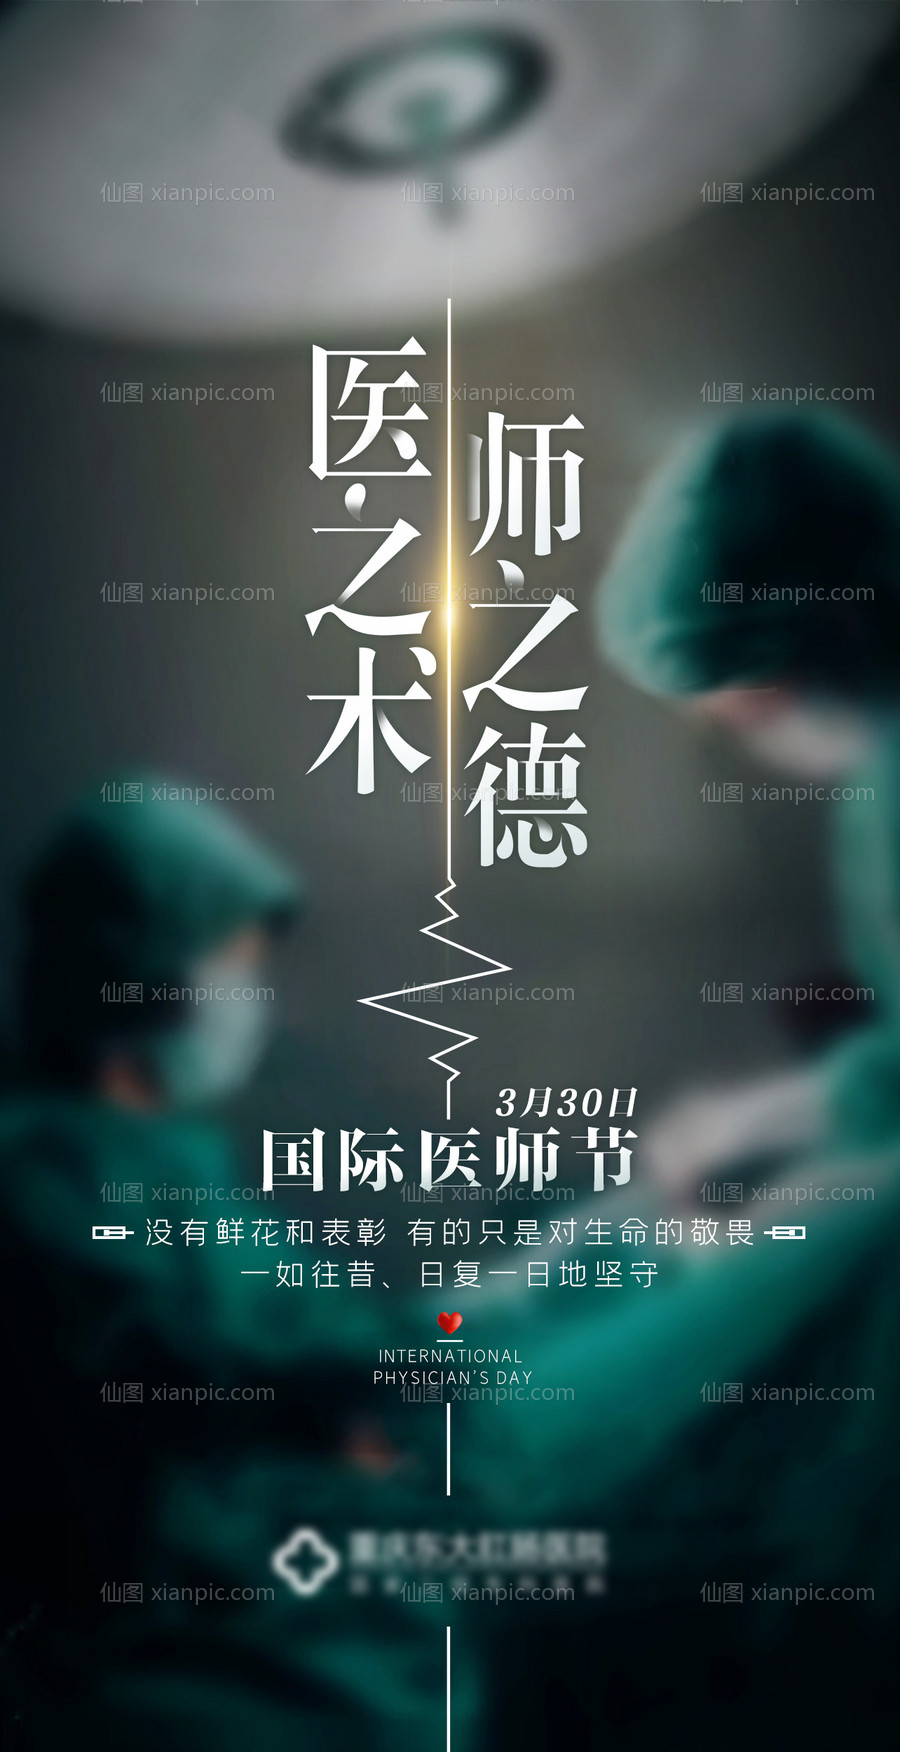 素材乐-国际医师节海报